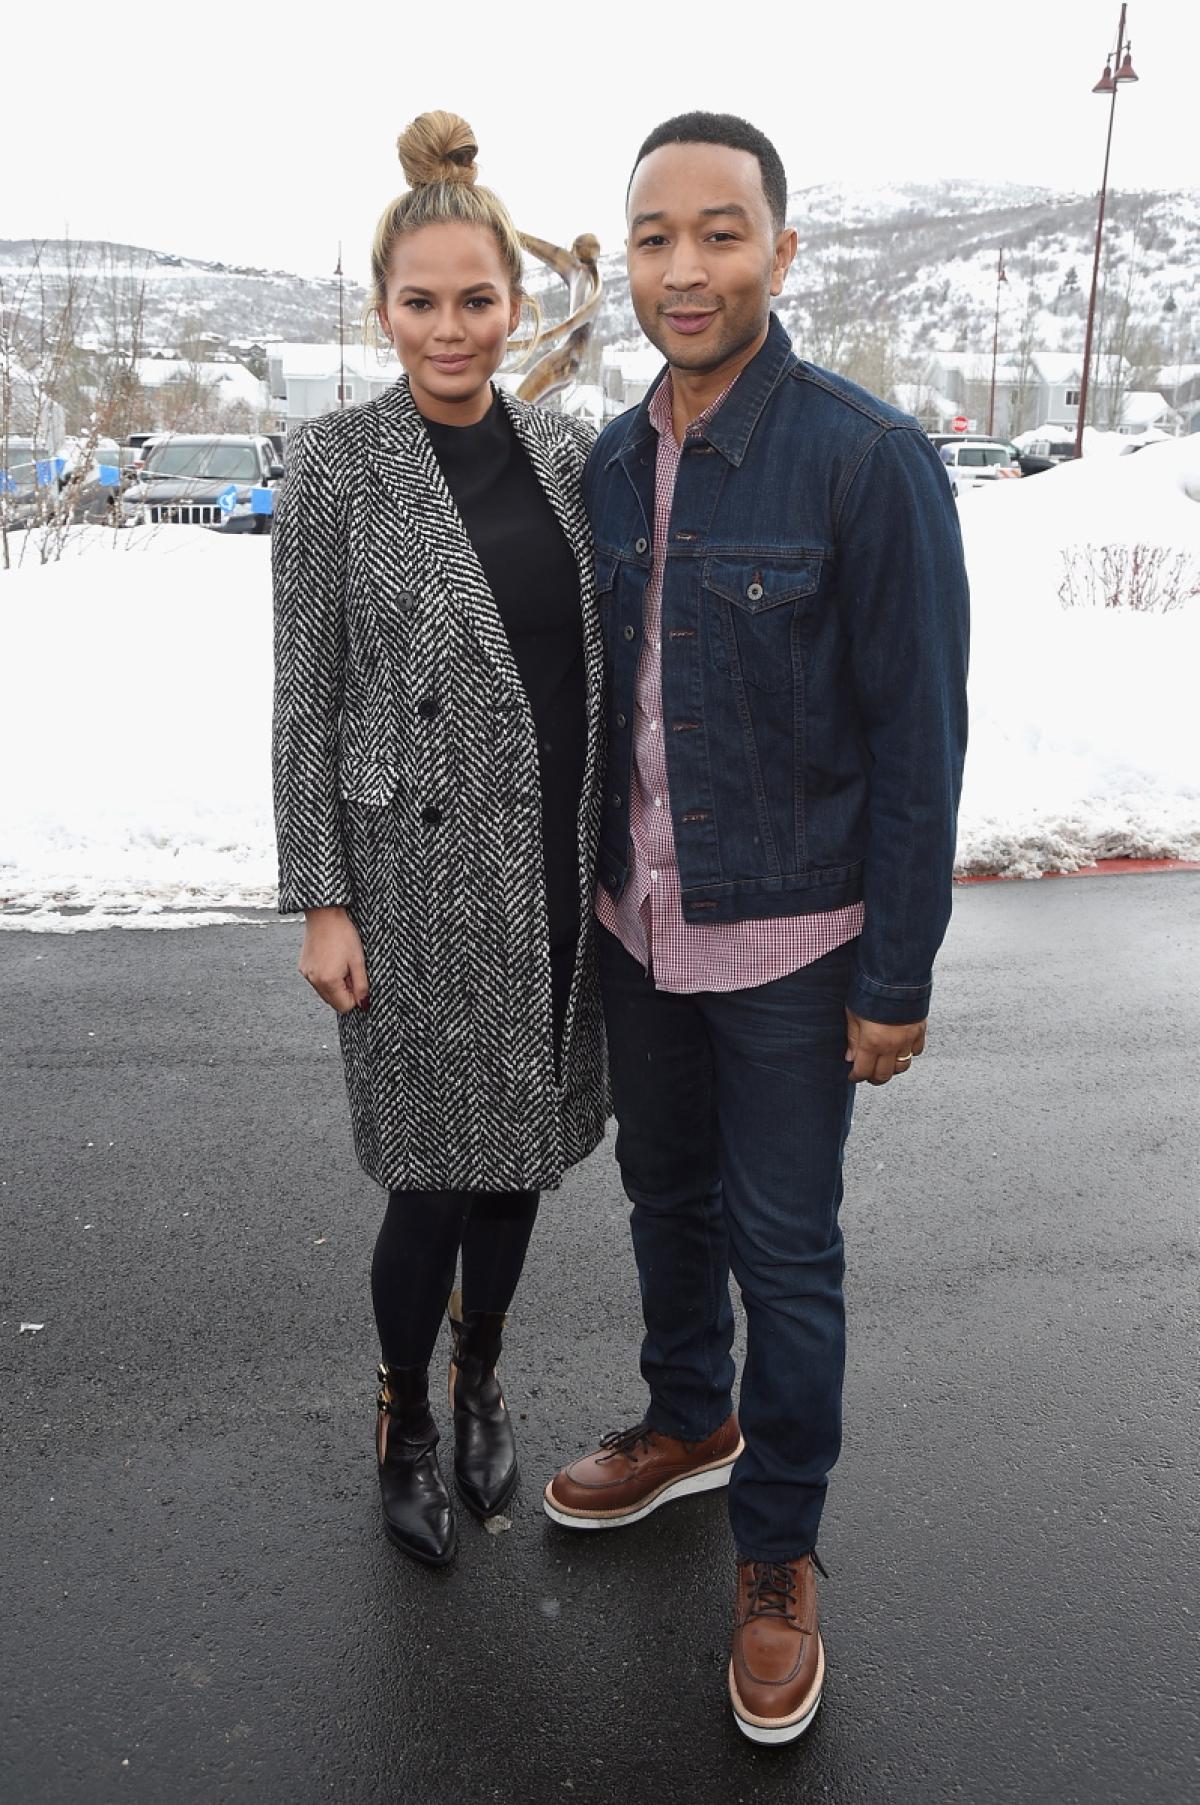 Chrissy Teigen and John Legend at Sundance Film Festival 2016